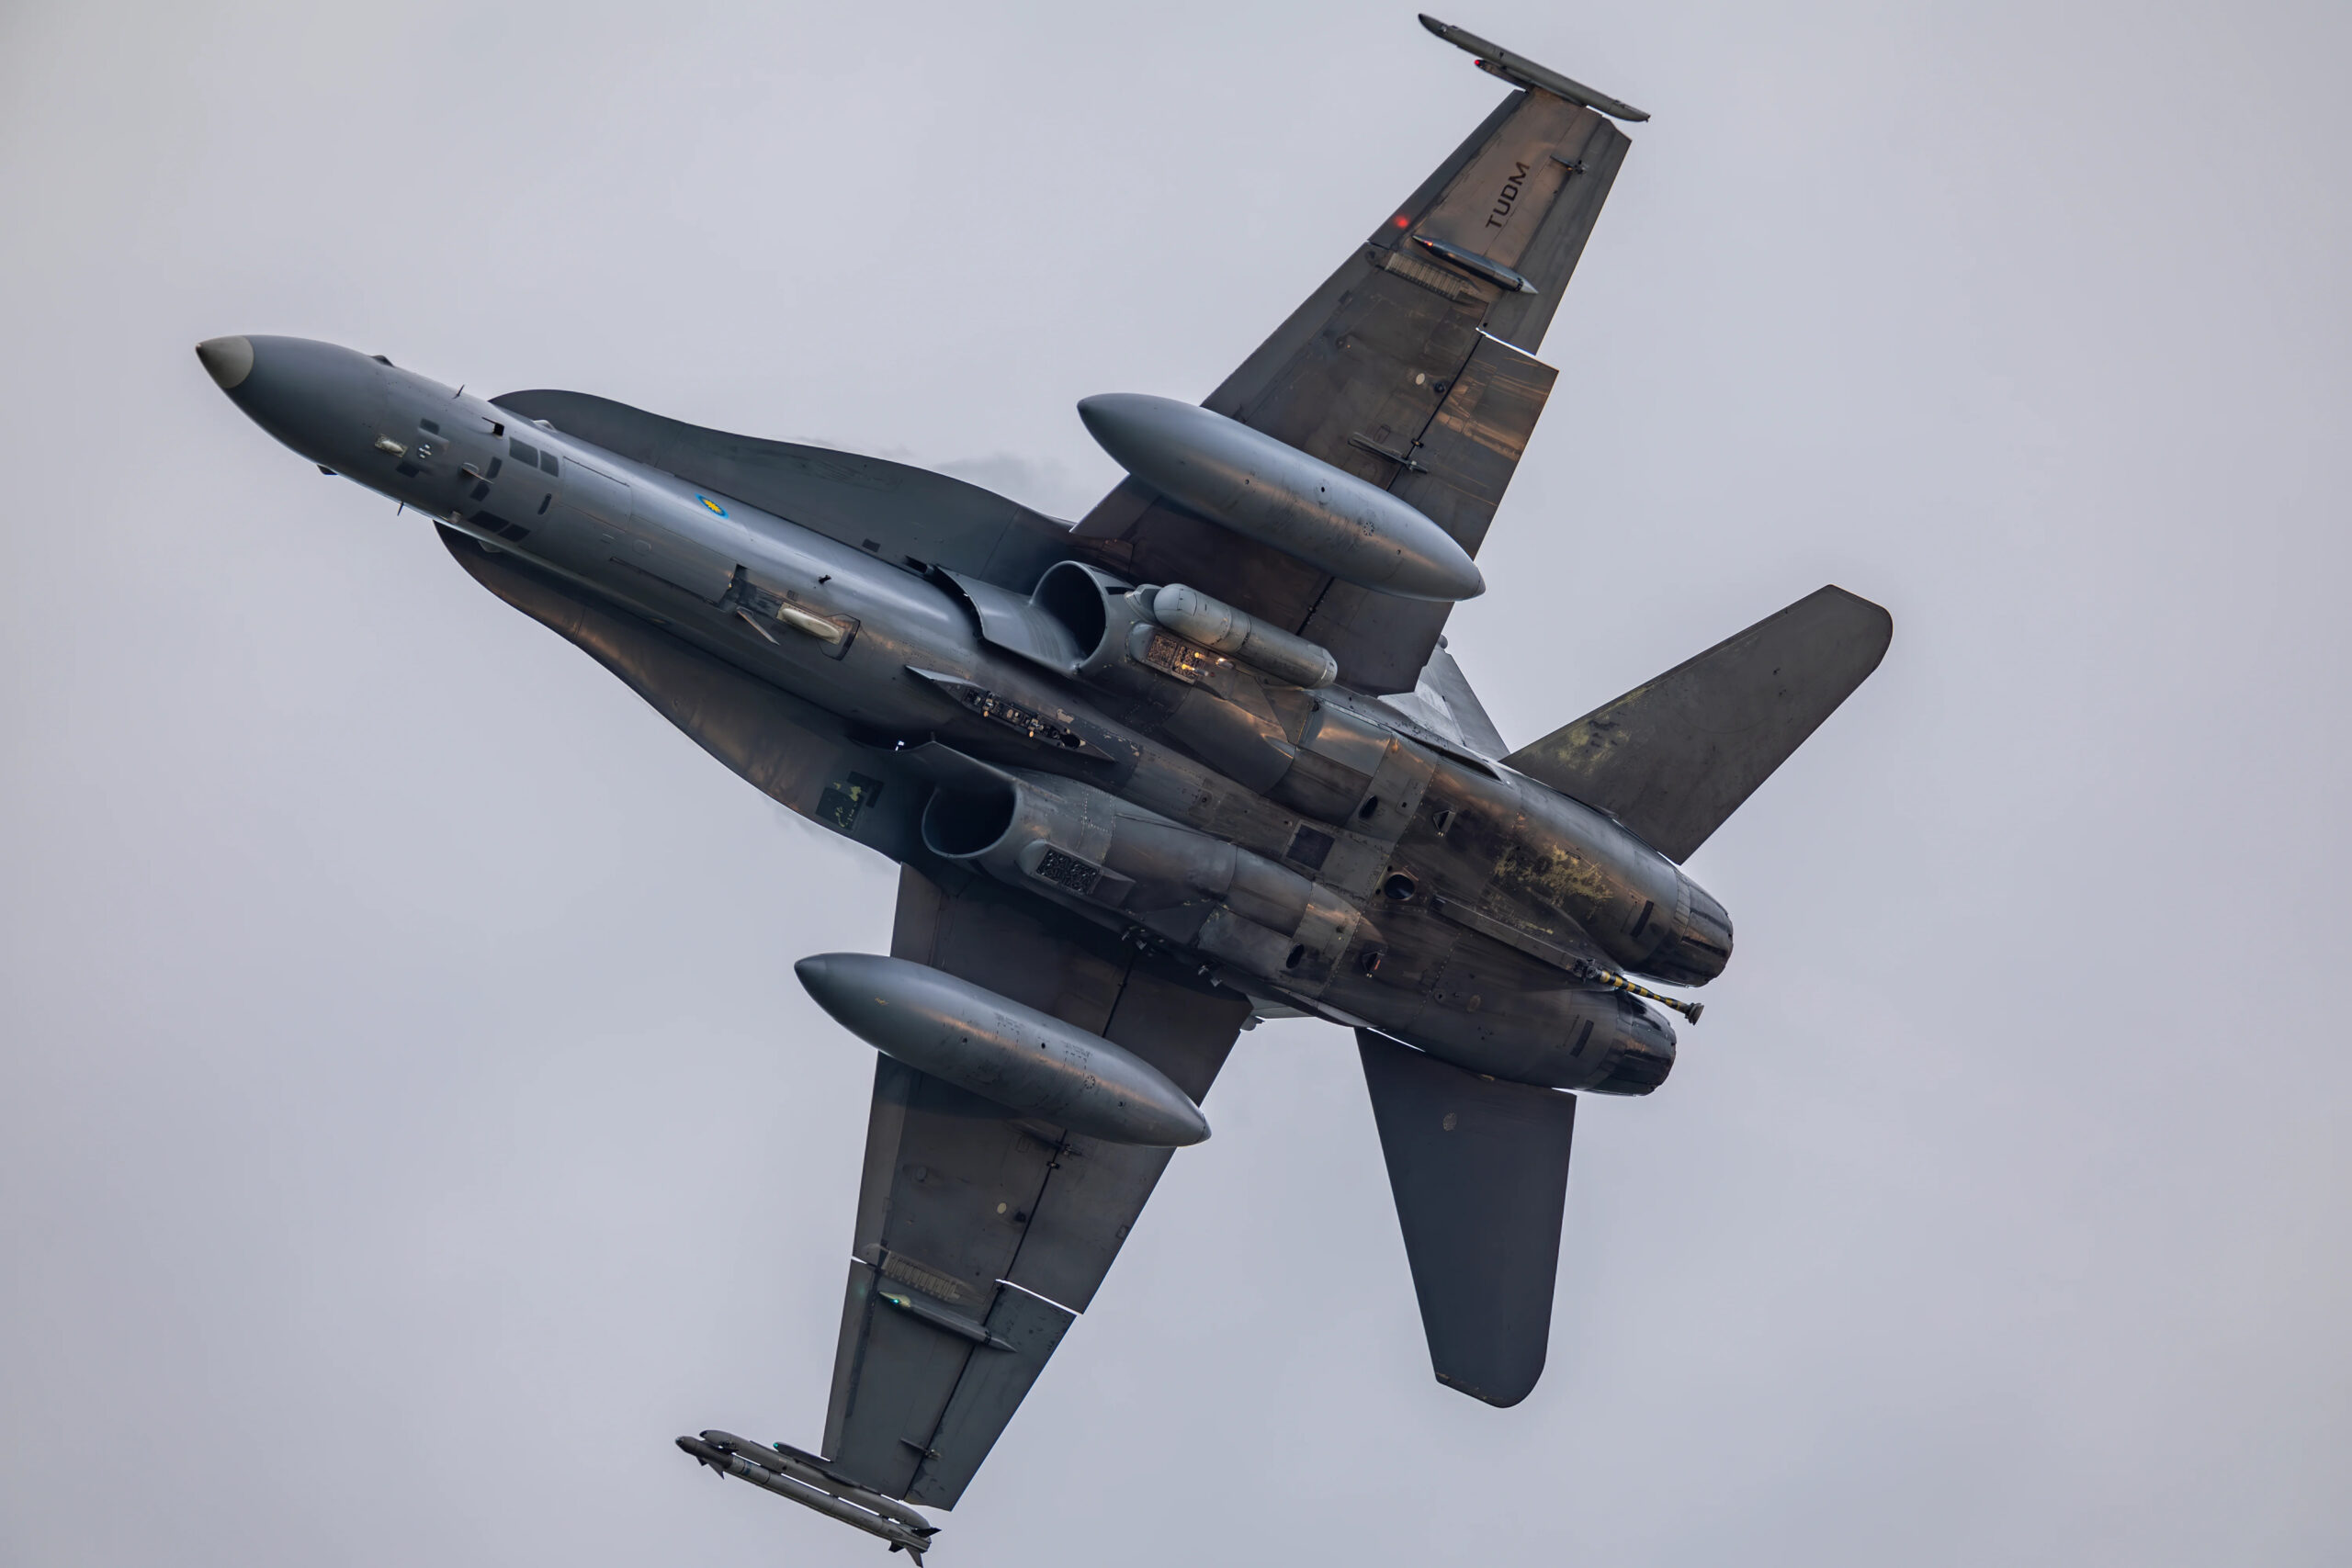 عرض غير مُحرر لـ RMAF F / A-18D يخرج زوجًا من خراطيش الإجراءات المضادة من موزعات الدلو المزدوج أسفل مدخل هواء المحرك الأيسر.  <em> @ stella991214 </em>